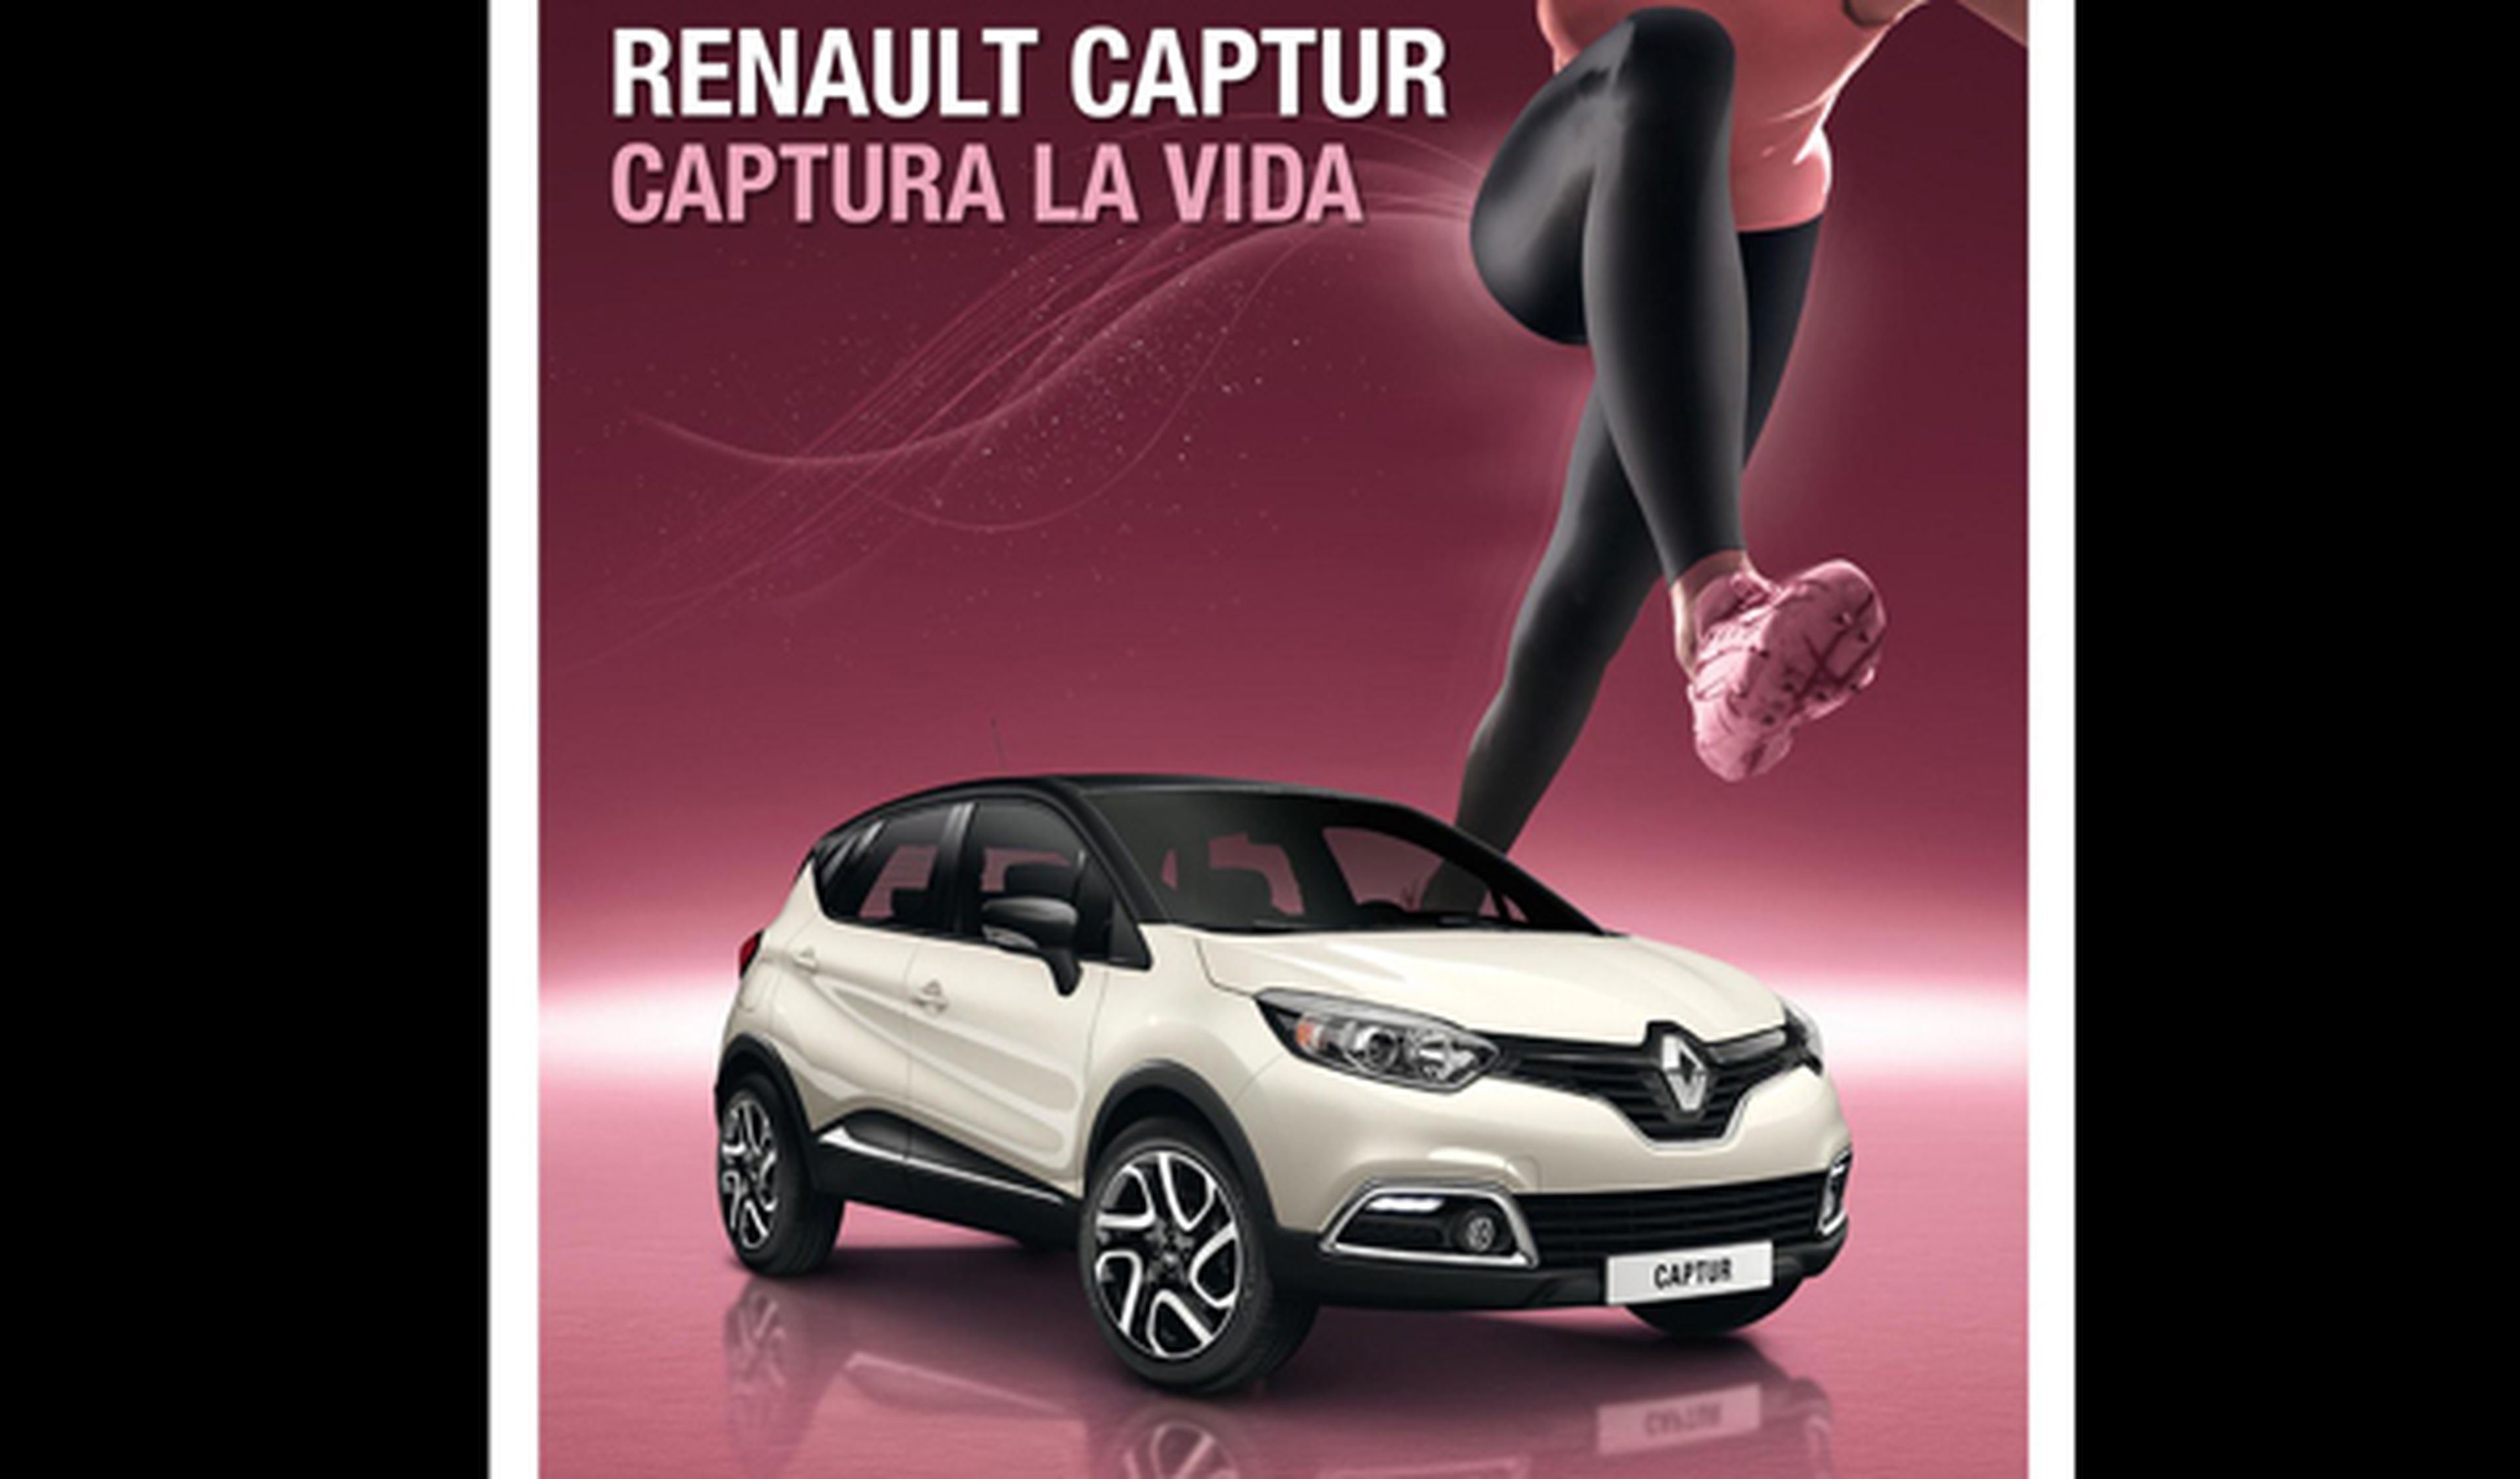 Renault Captur, el coche oficial de la Carrera de la Mujer